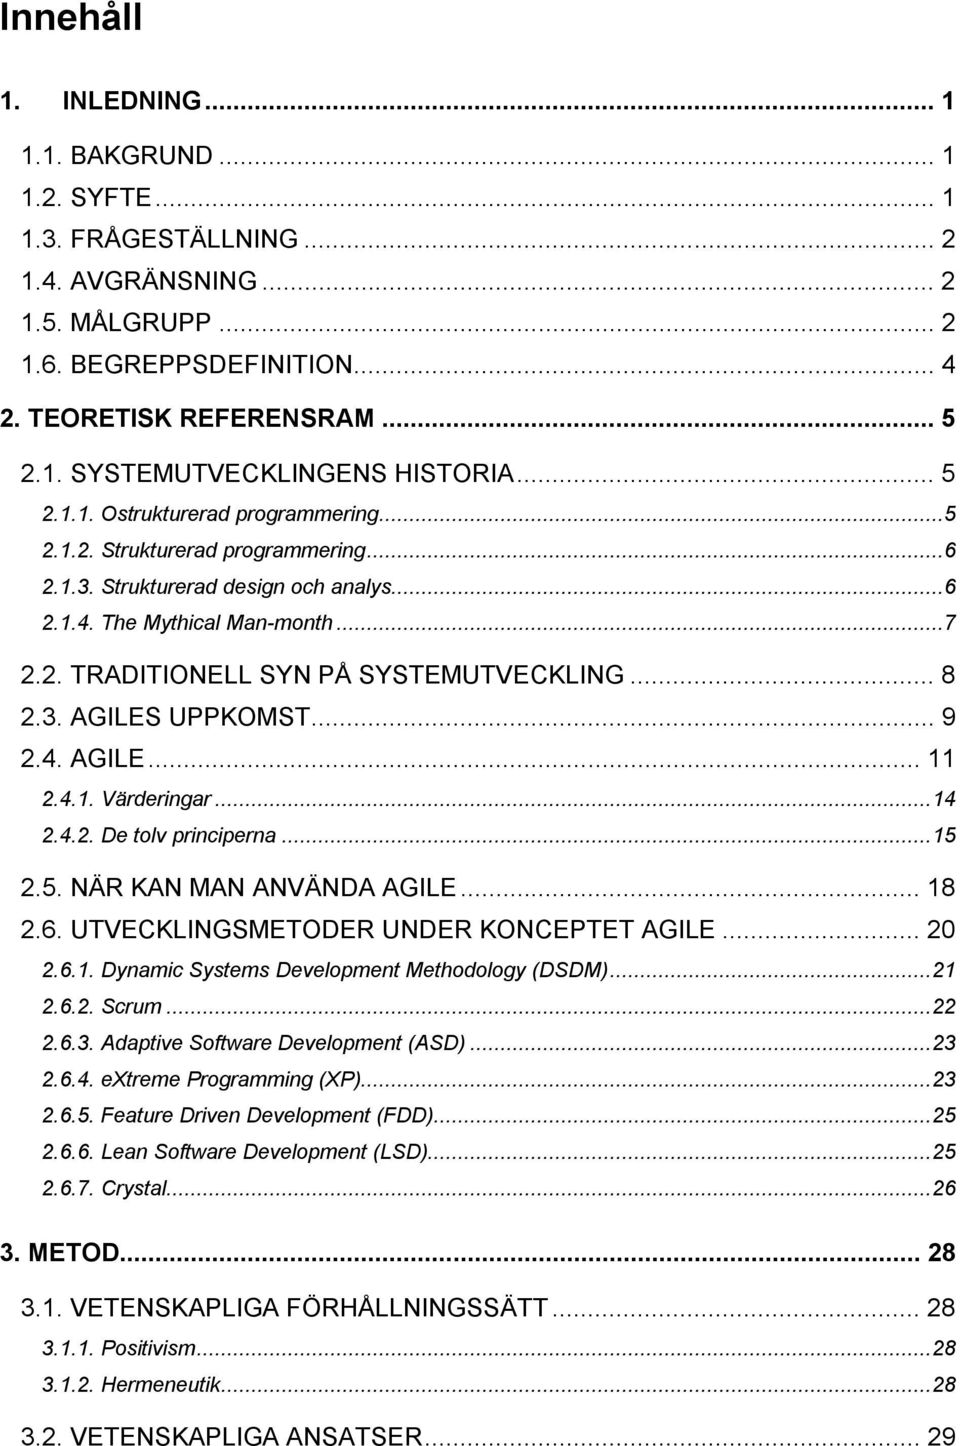 .. 8 2.3. AGILES UPPKOMST... 9 2.4. AGILE... 11 2.4.1. Värderingar...14 2.4.2. De tolv principerna...15 2.5. NÄR KAN MAN ANVÄNDA AGILE... 18 2.6. UTVECKLINGSMETODER UNDER KONCEPTET AGILE... 20 2.6.1. Dynamic Systems Development Methodology (DSDM).